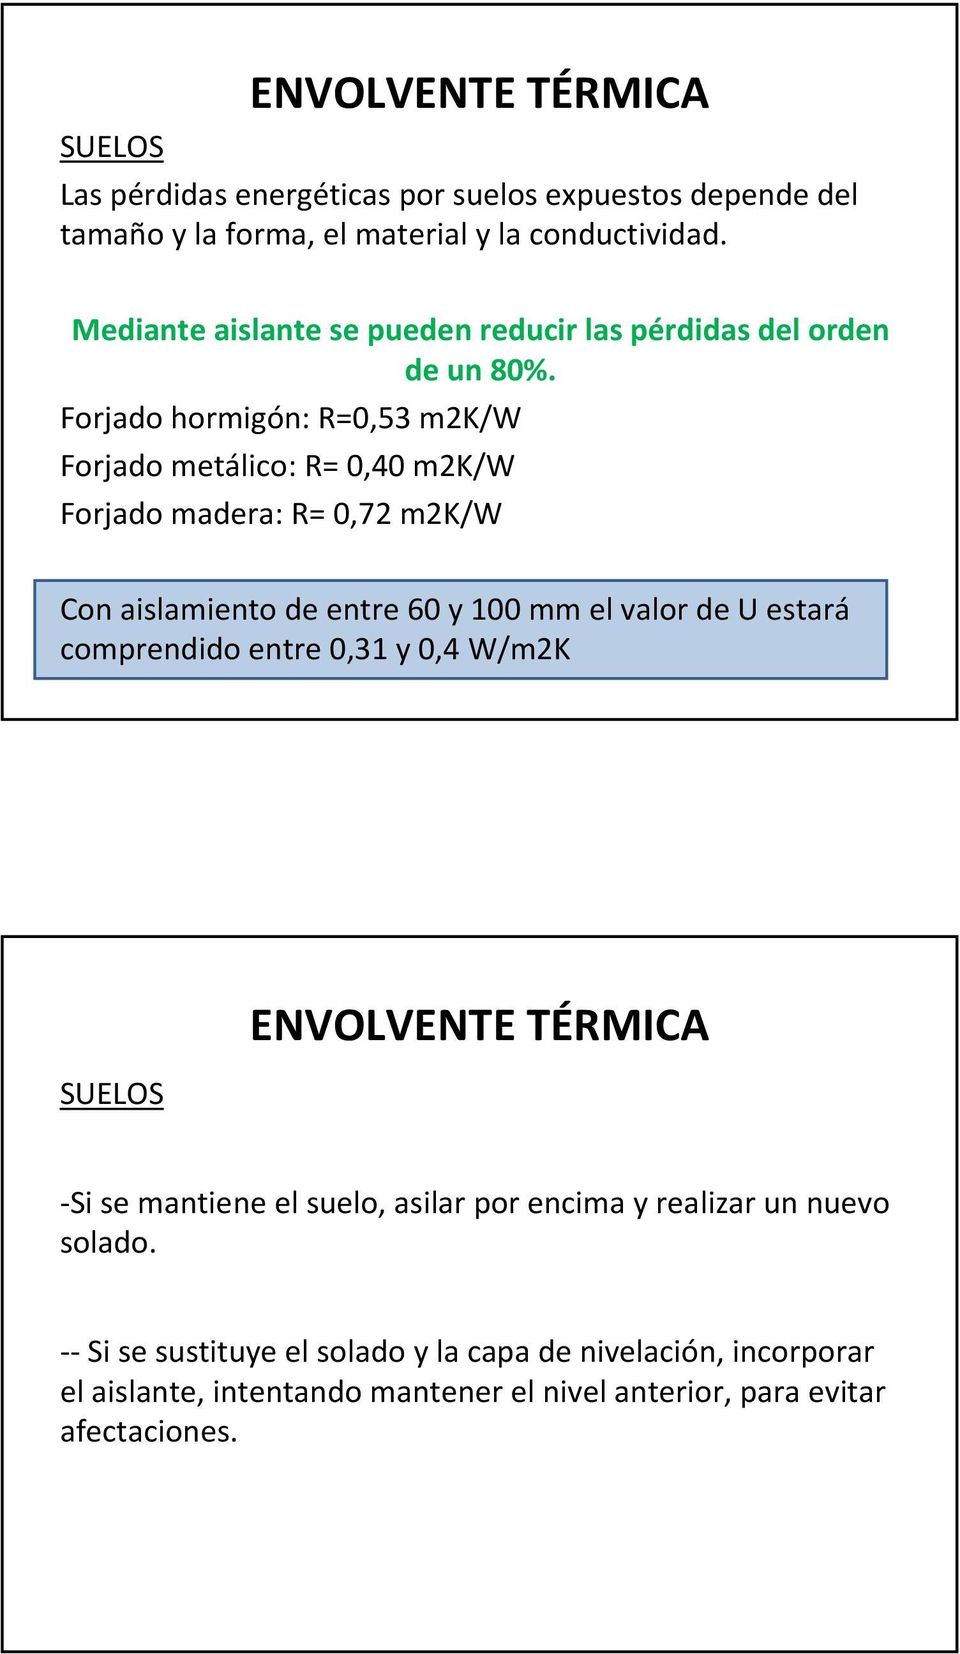 Forjado hormigón: R=0,53 m2k/w Forjado metálico: R= 0,40 m2k/w Forjado madera: R= 0,72 m2k/w Con aislamiento de entre 60 y 100 mm el valor de U